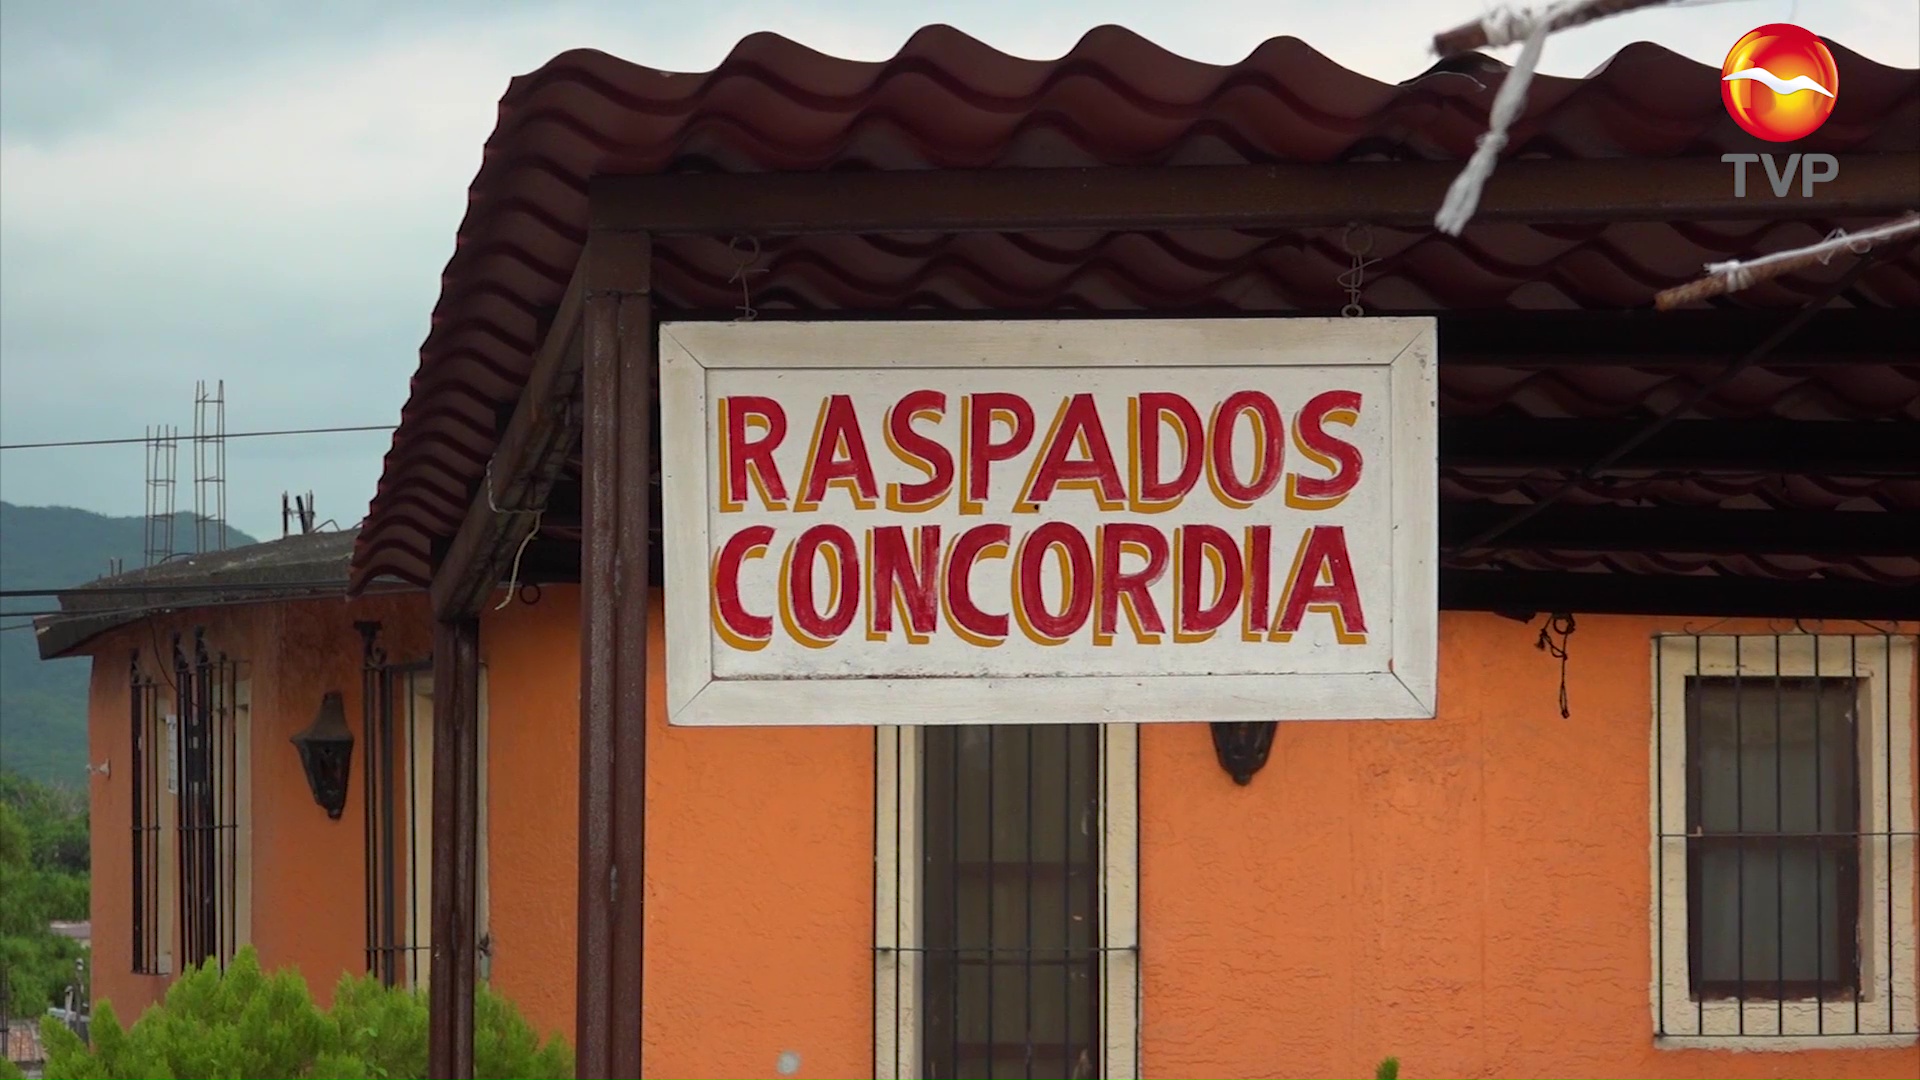 Los raspados de Concordia, una delicia que conquista | Sinaloa | Noticias |  TVP 